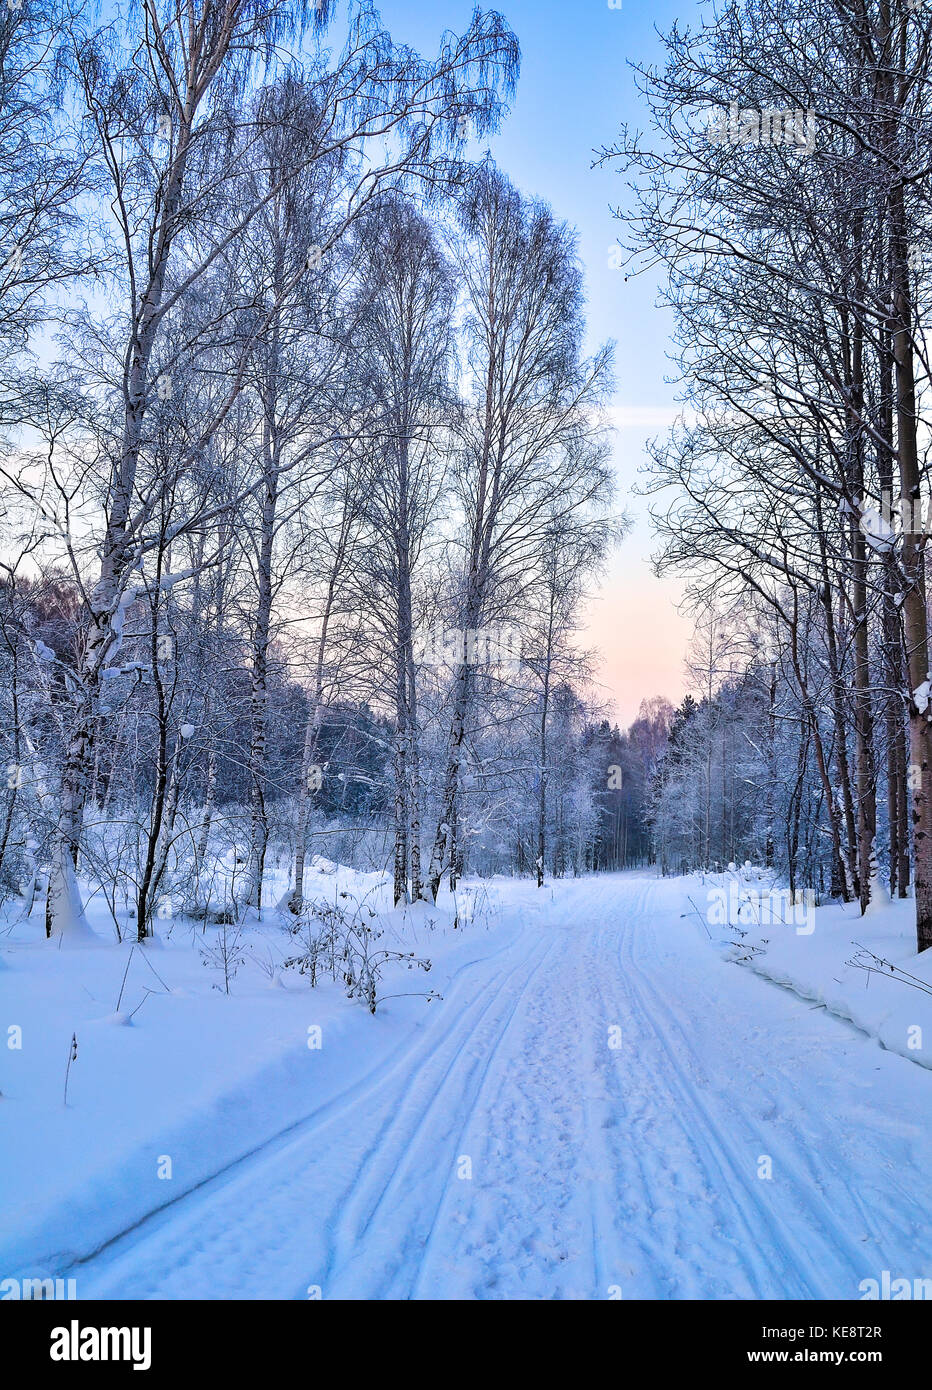 Sanfter Winter rosa Morgen auf einem verschneiten Wald Straße mit Fußspuren und Ski auf dem Schnee geht in die Ferne - Schöne weiche Farben des Winters Stockfoto